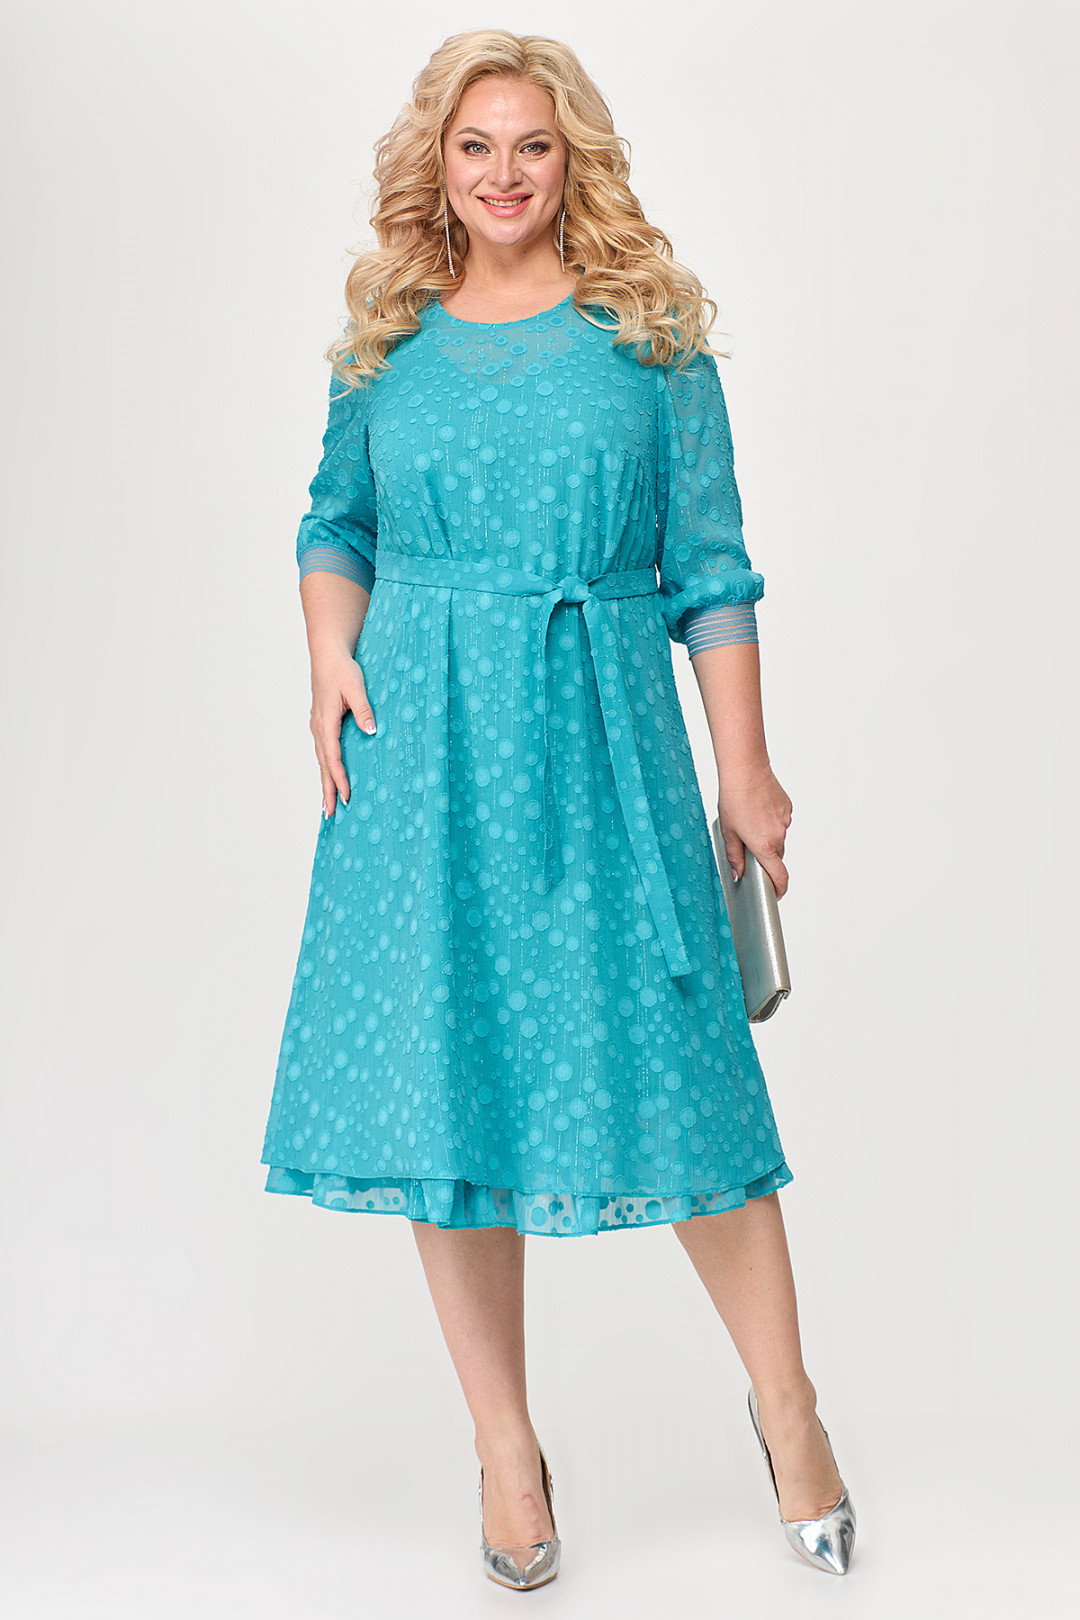 Платье ALGRANDA (Новелла Шарм) A3814-2-6